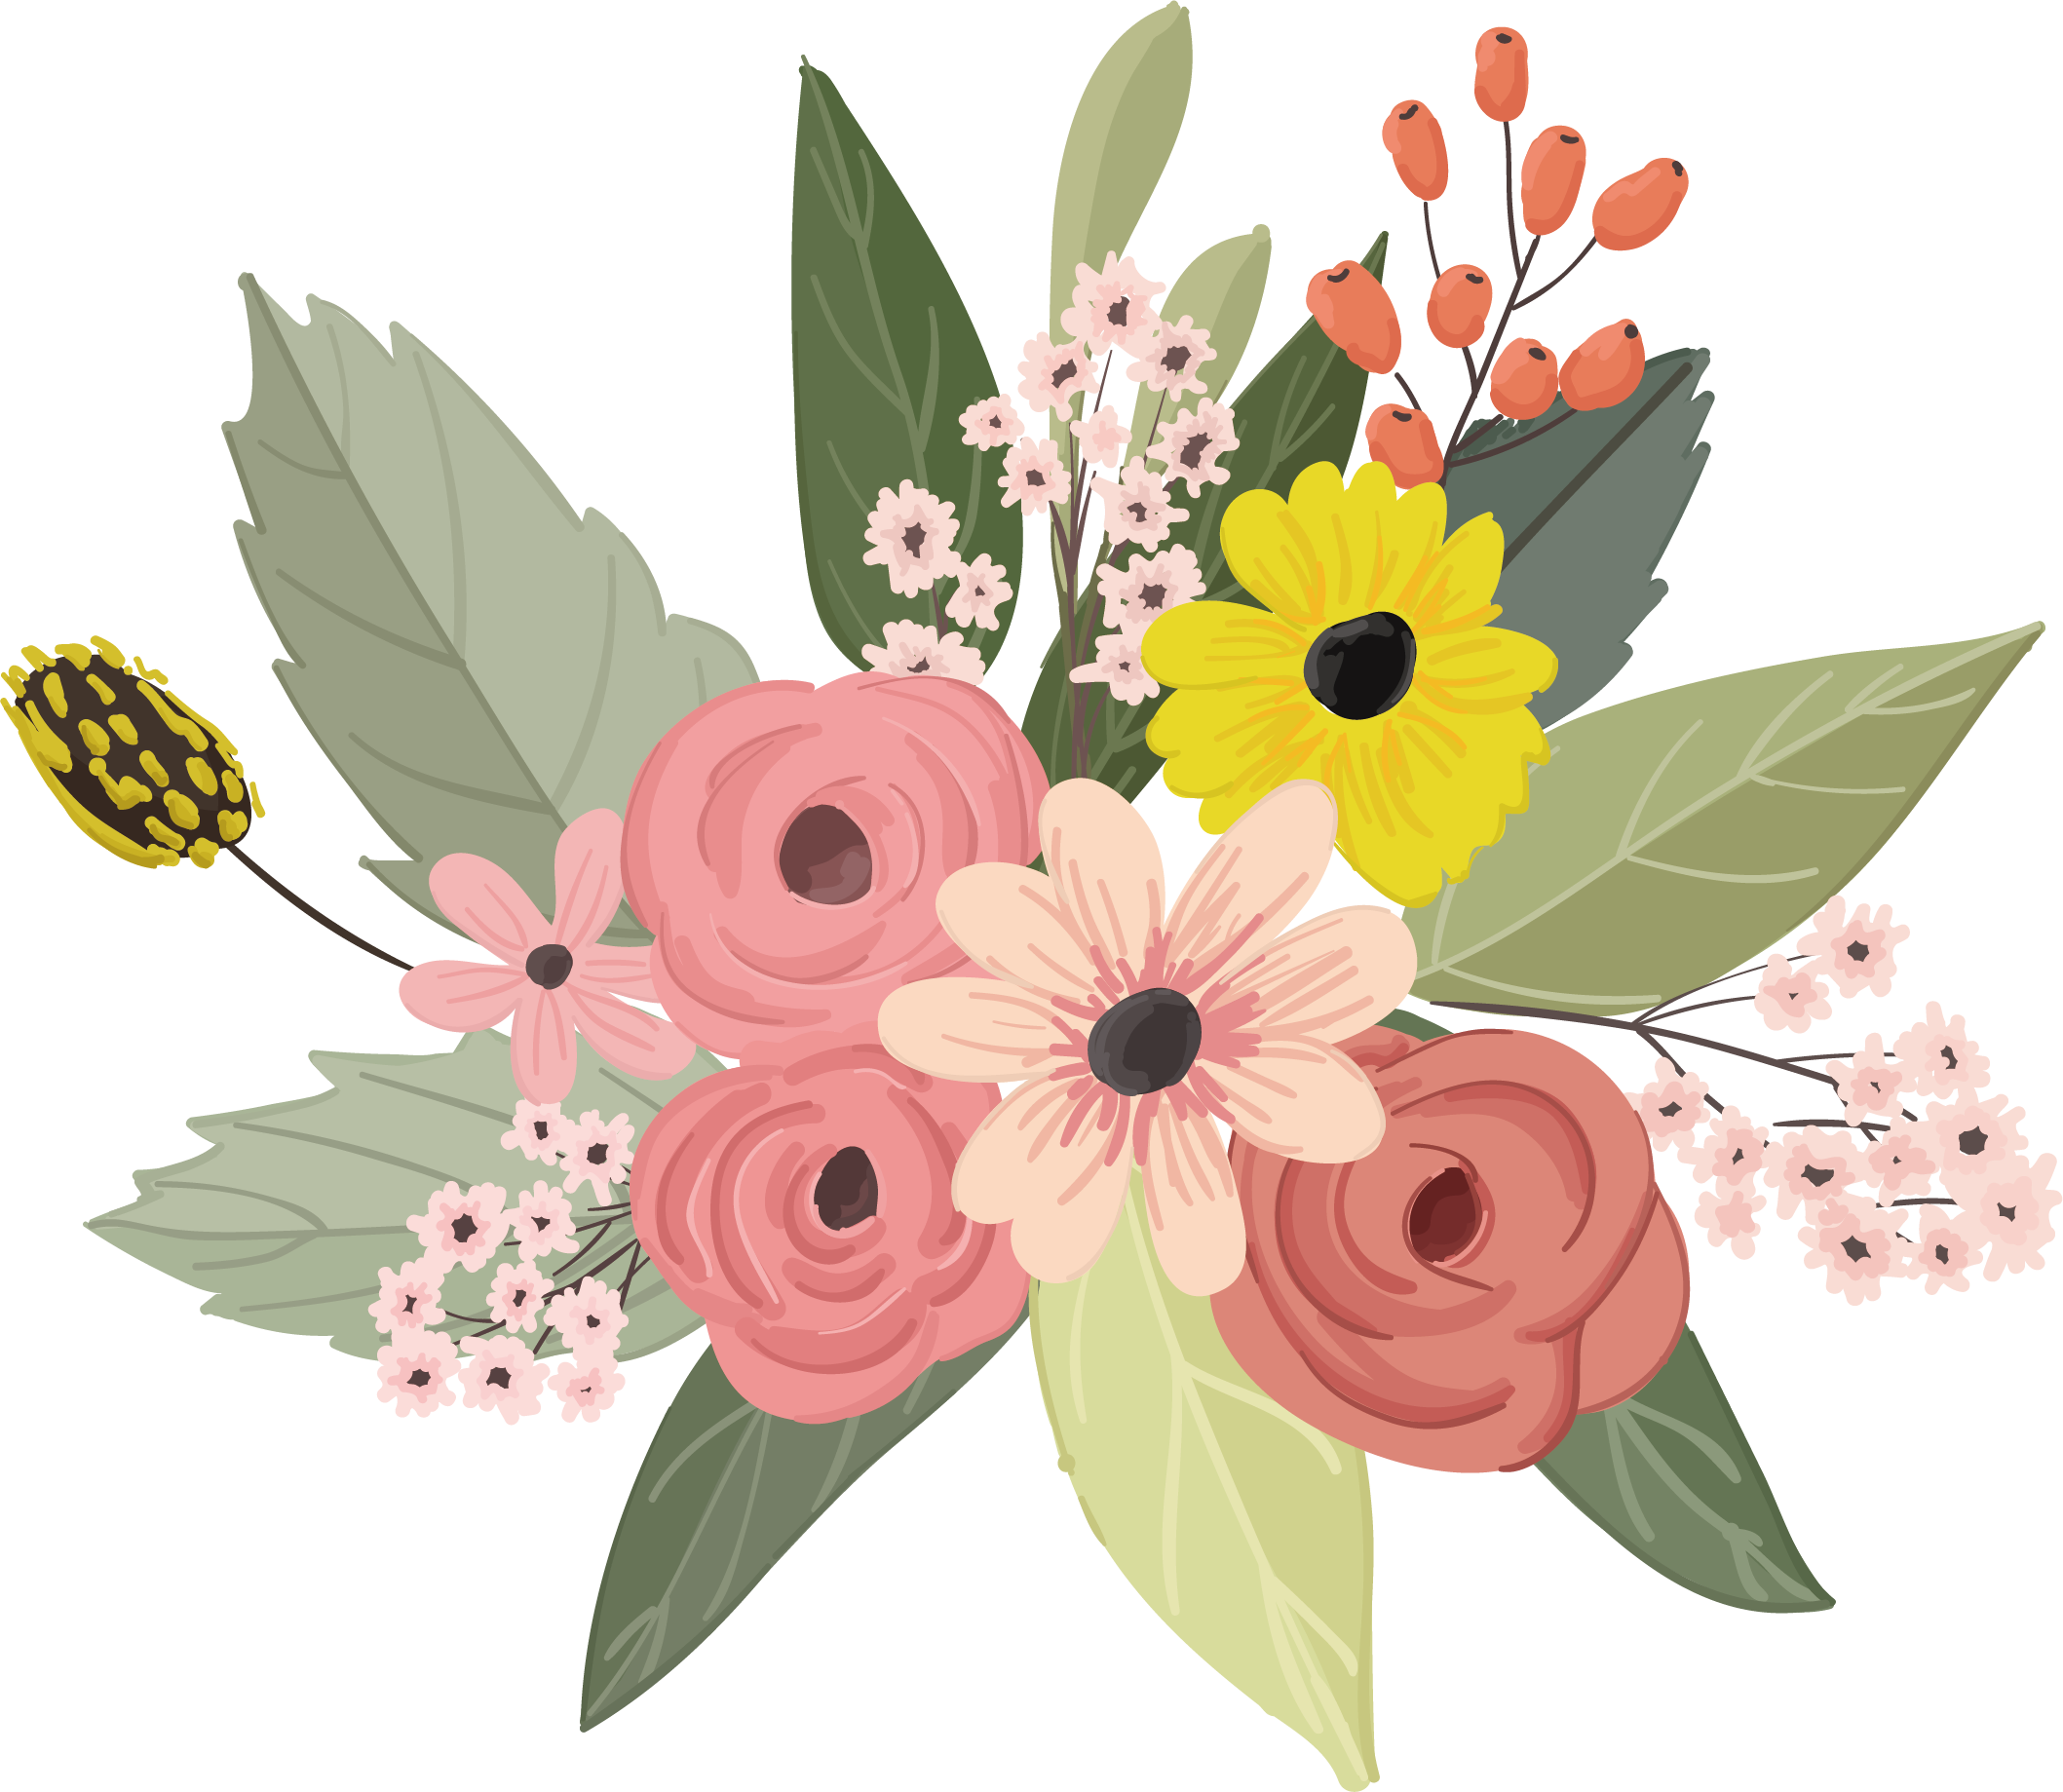 download free vector illustration floral